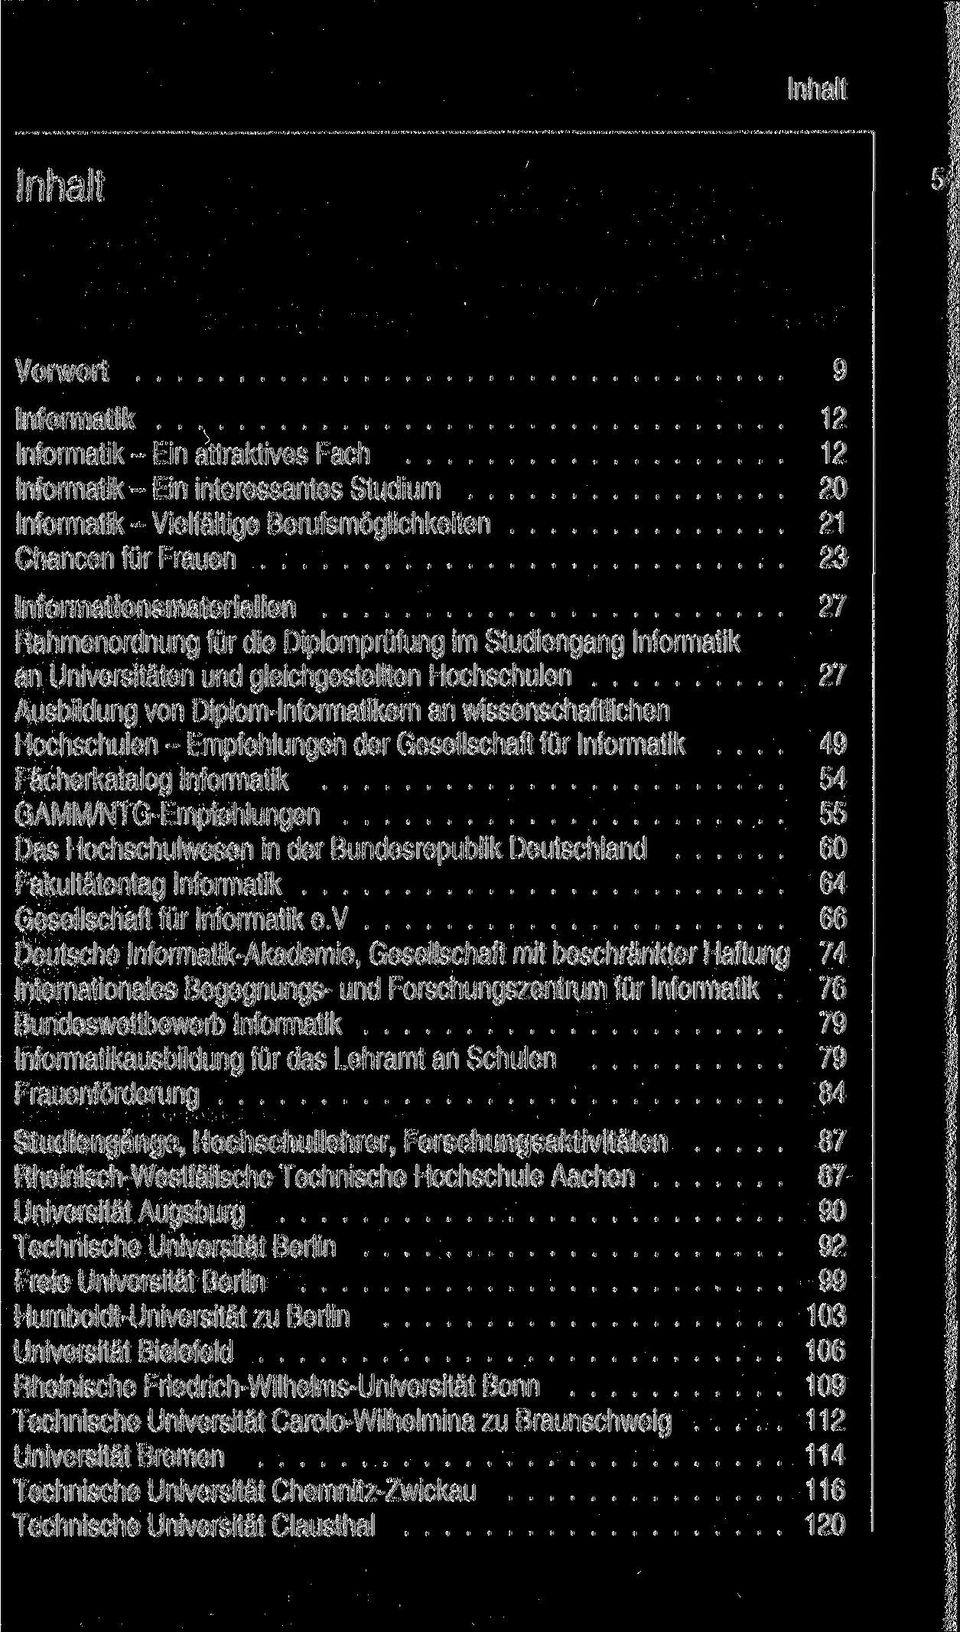 Hochschulen - Empfehlungen der Gesellschaft für Informatik.